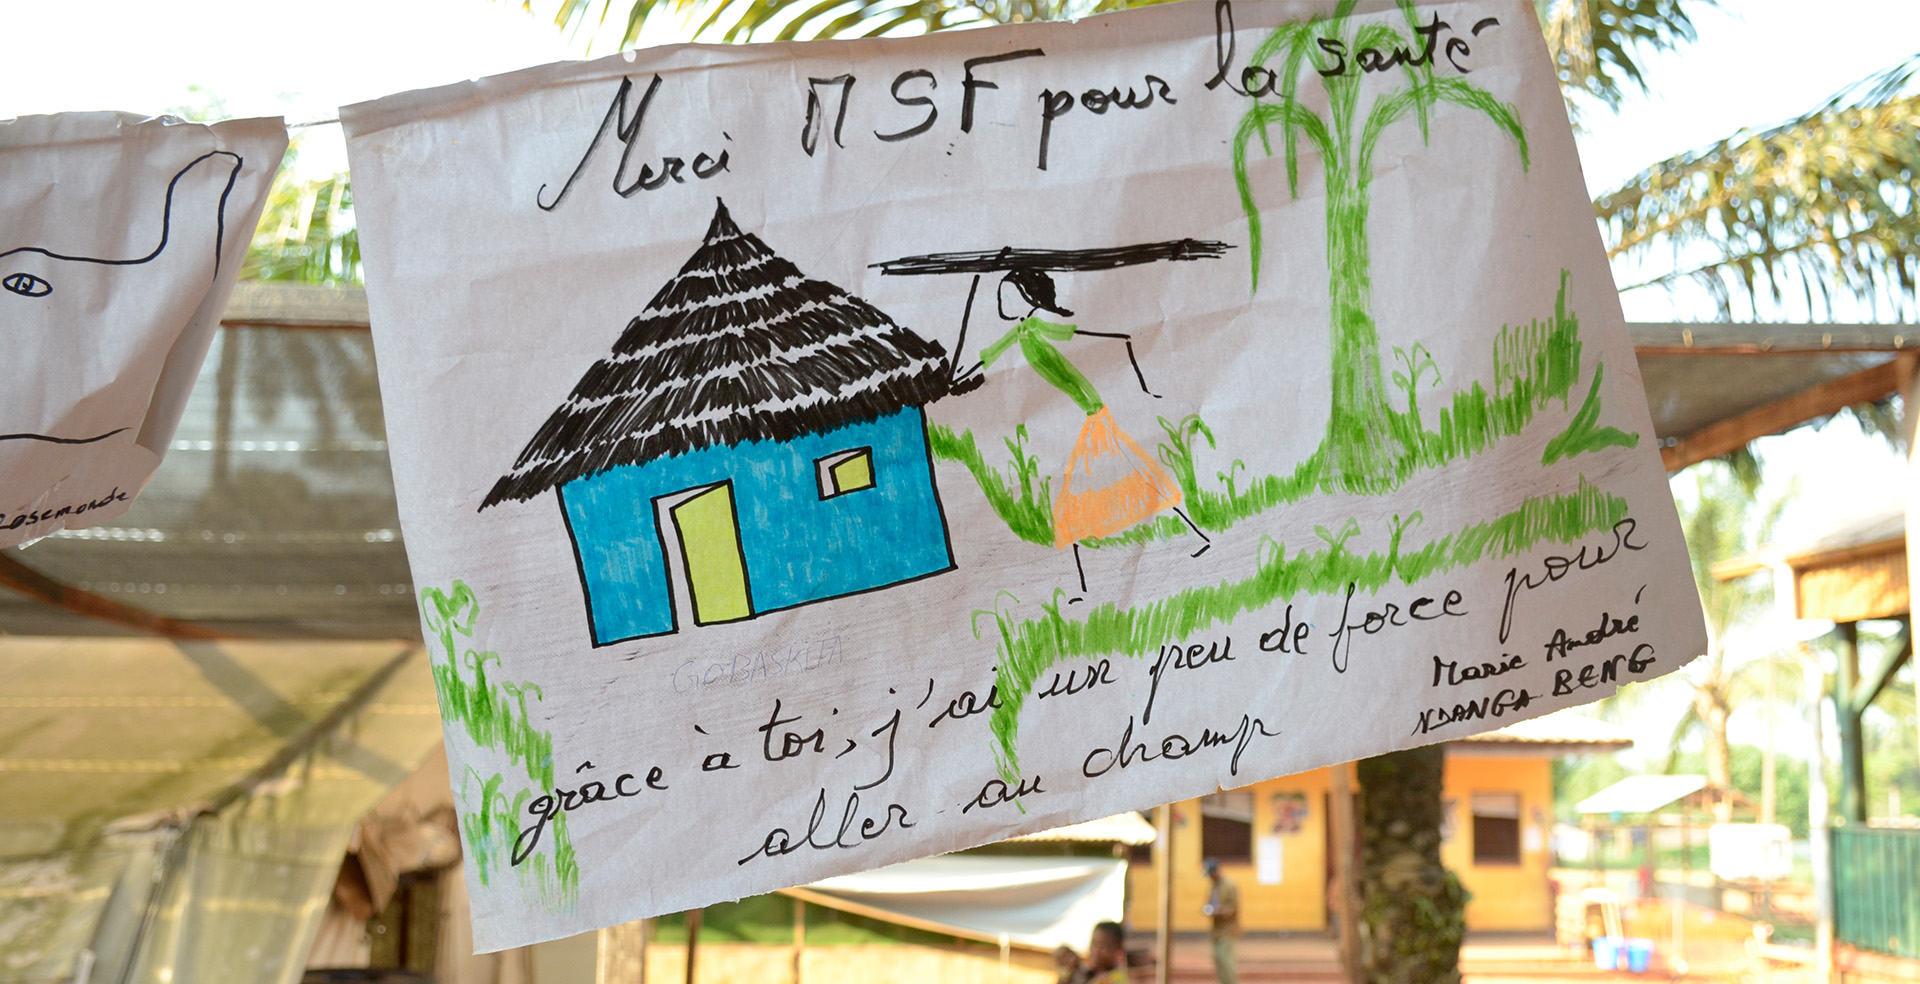 中央アフリカ共和国では、栄養失調の子どもを抱え育児に行き詰まった母親たちに、心のケアを行った。「MSFのおかげで畑に行く元気がでました」と感謝の気持ちがつづられた絵。Ⓒ MSF